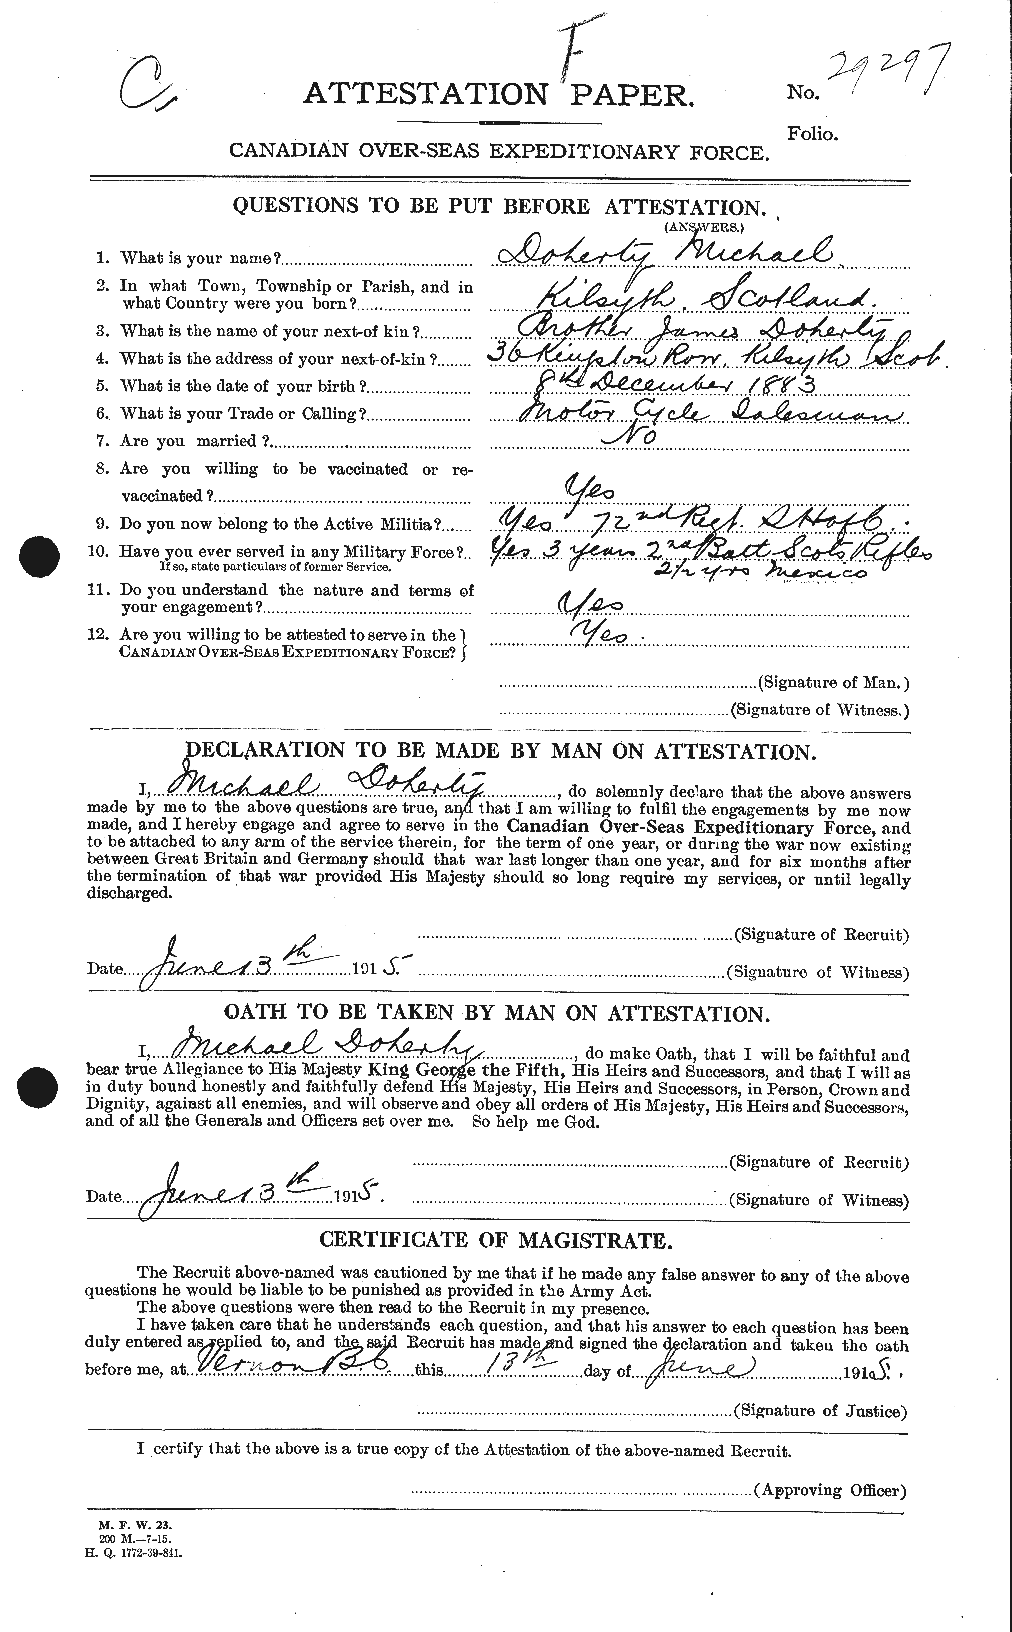 Dossiers du Personnel de la Première Guerre mondiale - CEC 297622a